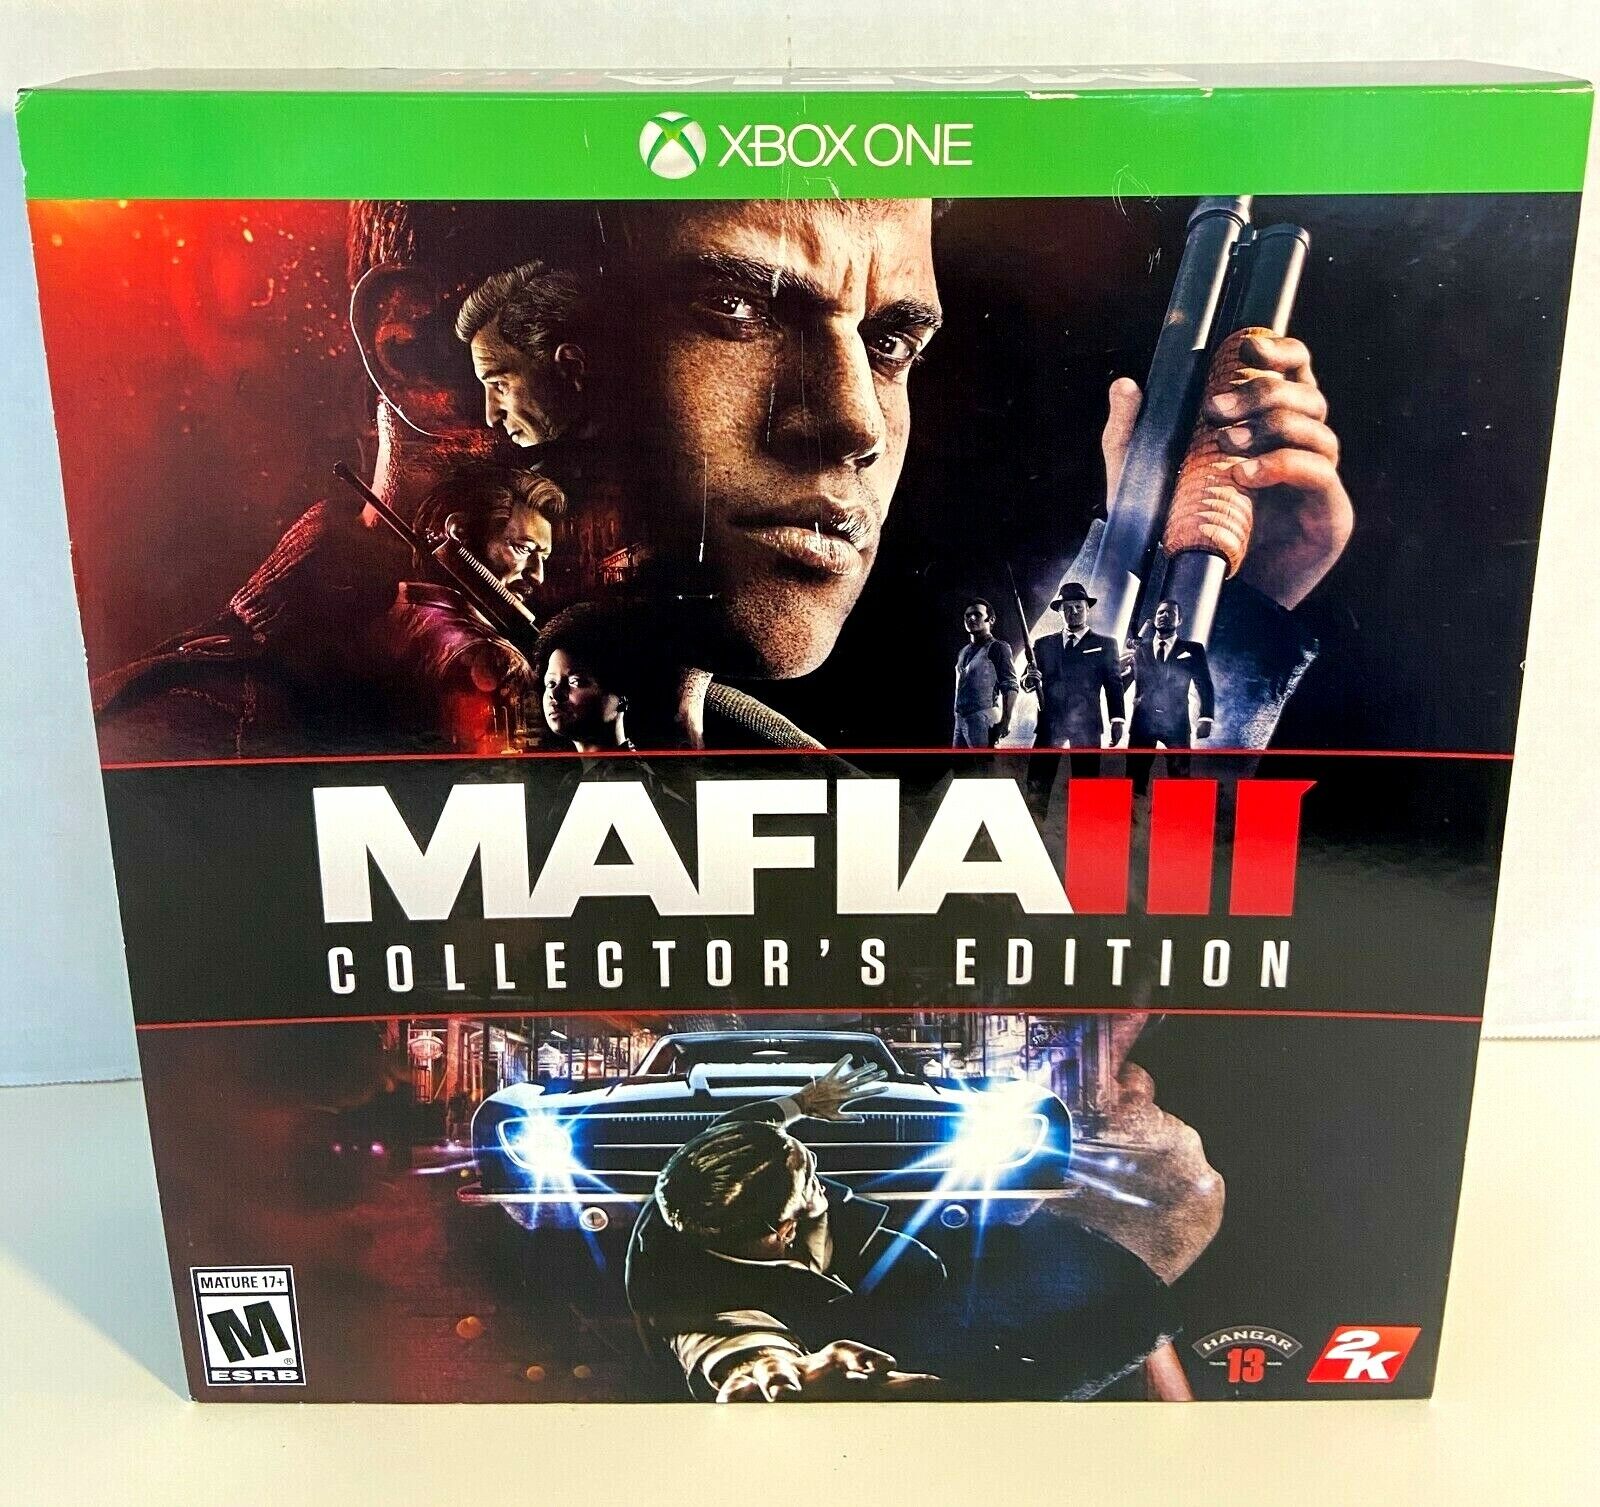 Mafia 3 collectors edition Xbox one